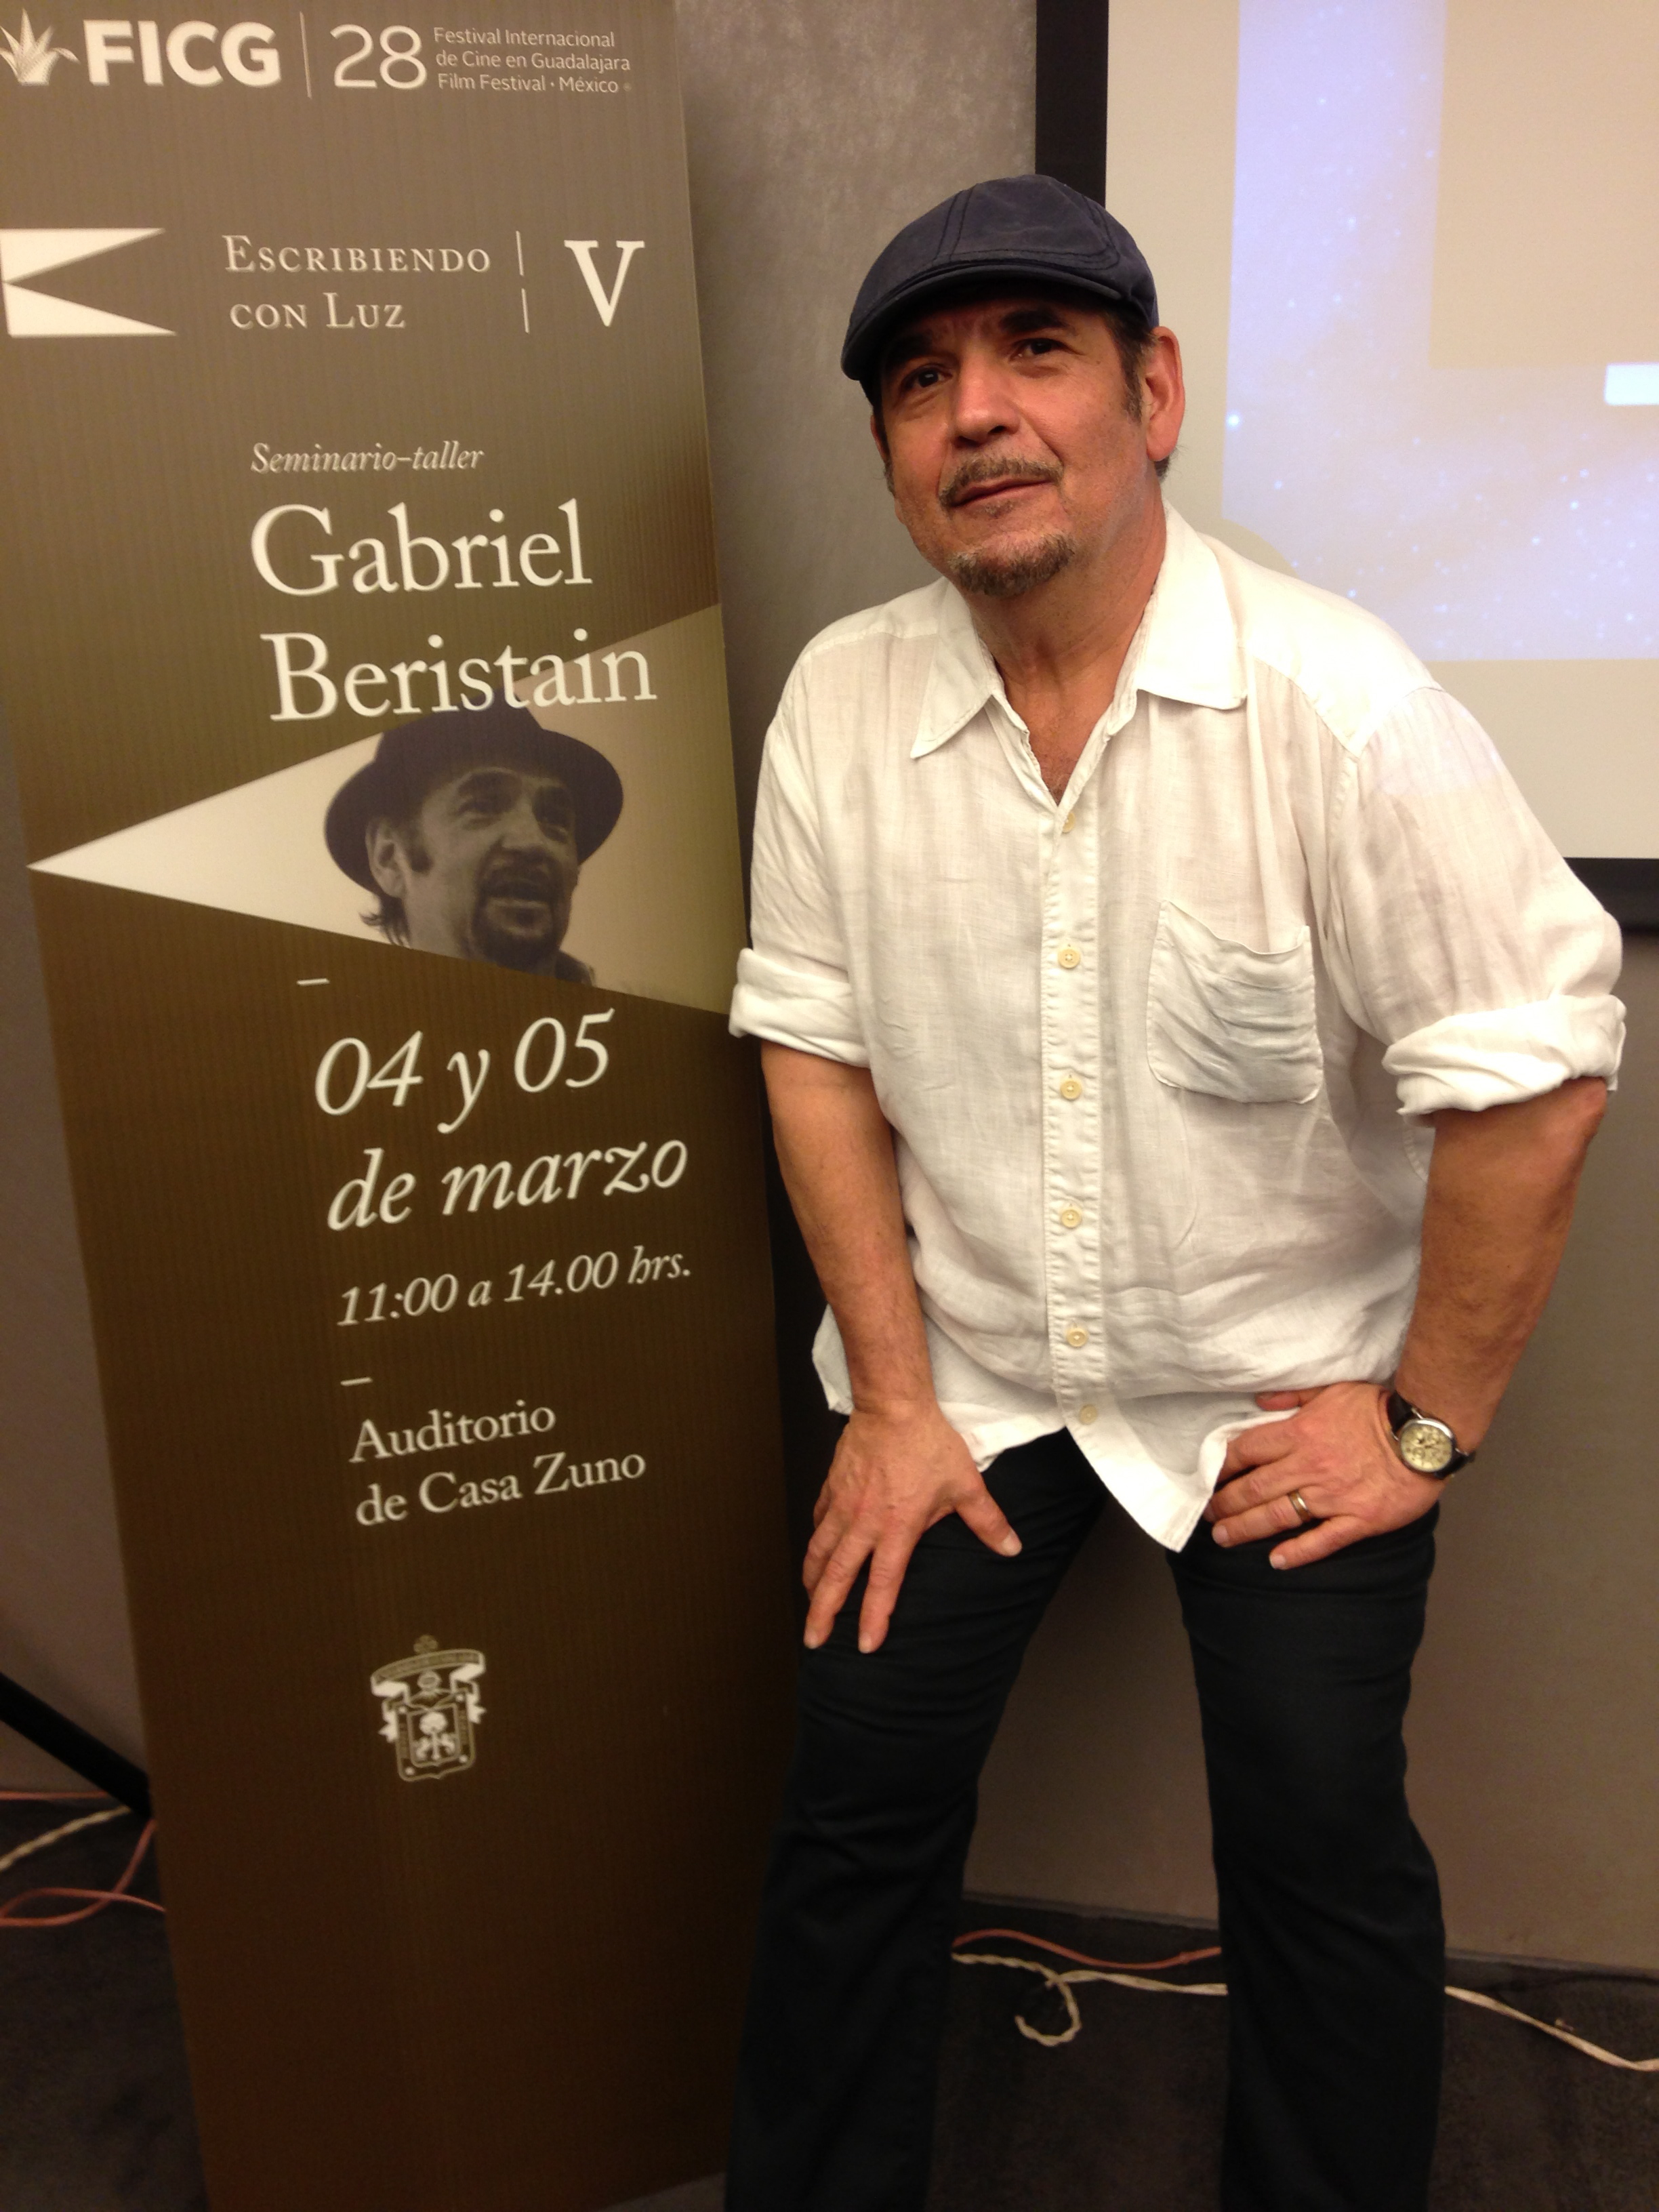 At Guadalajara Film Festival